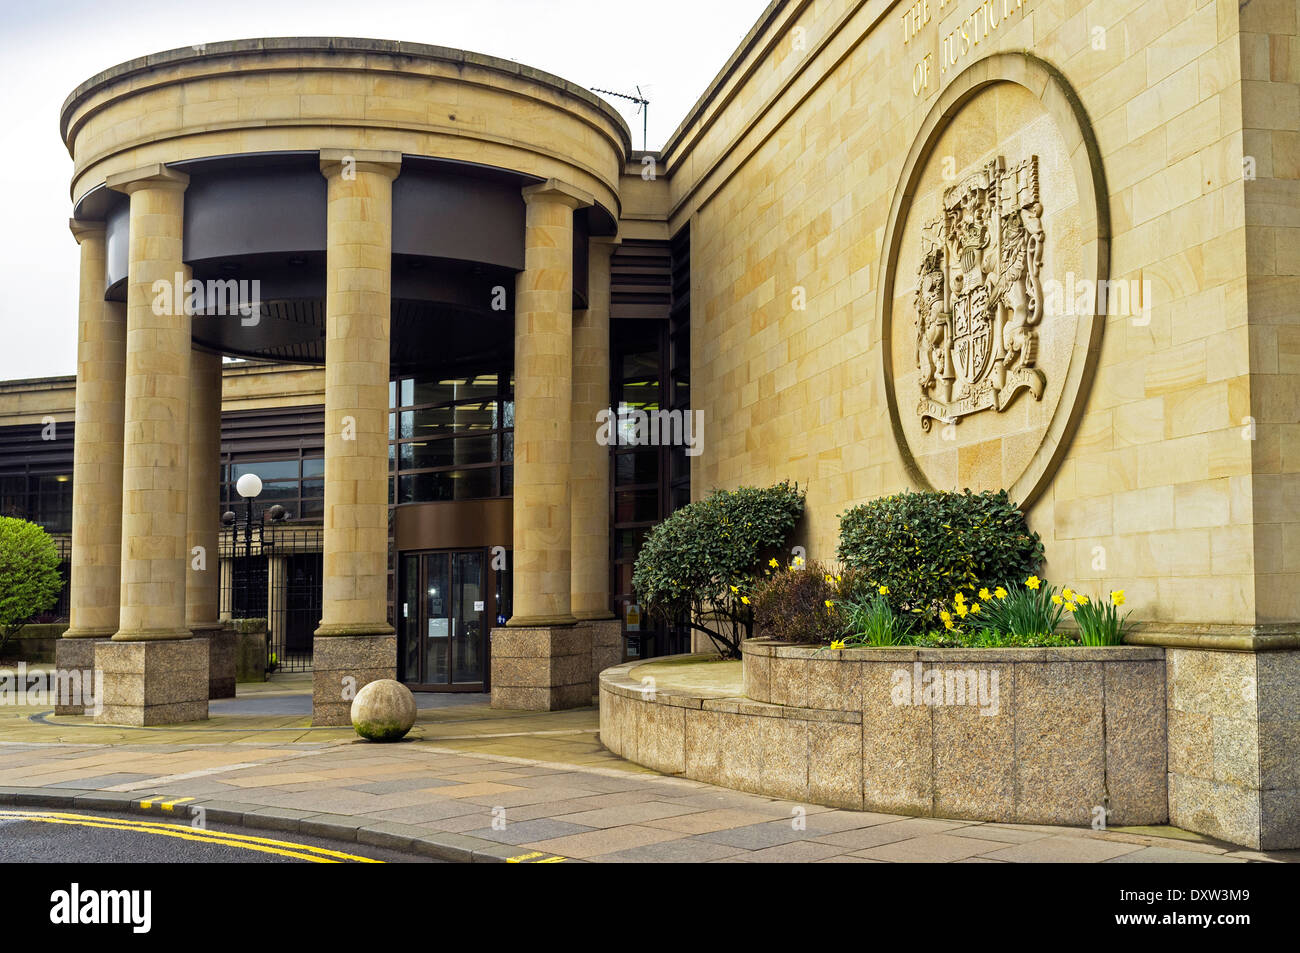 Porte d'accès avant et mur avec motif Justiciary, High Court of Justiciary, Glasgow, Ecosse, Grande-Bretagne, Royaume-Uni Banque D'Images